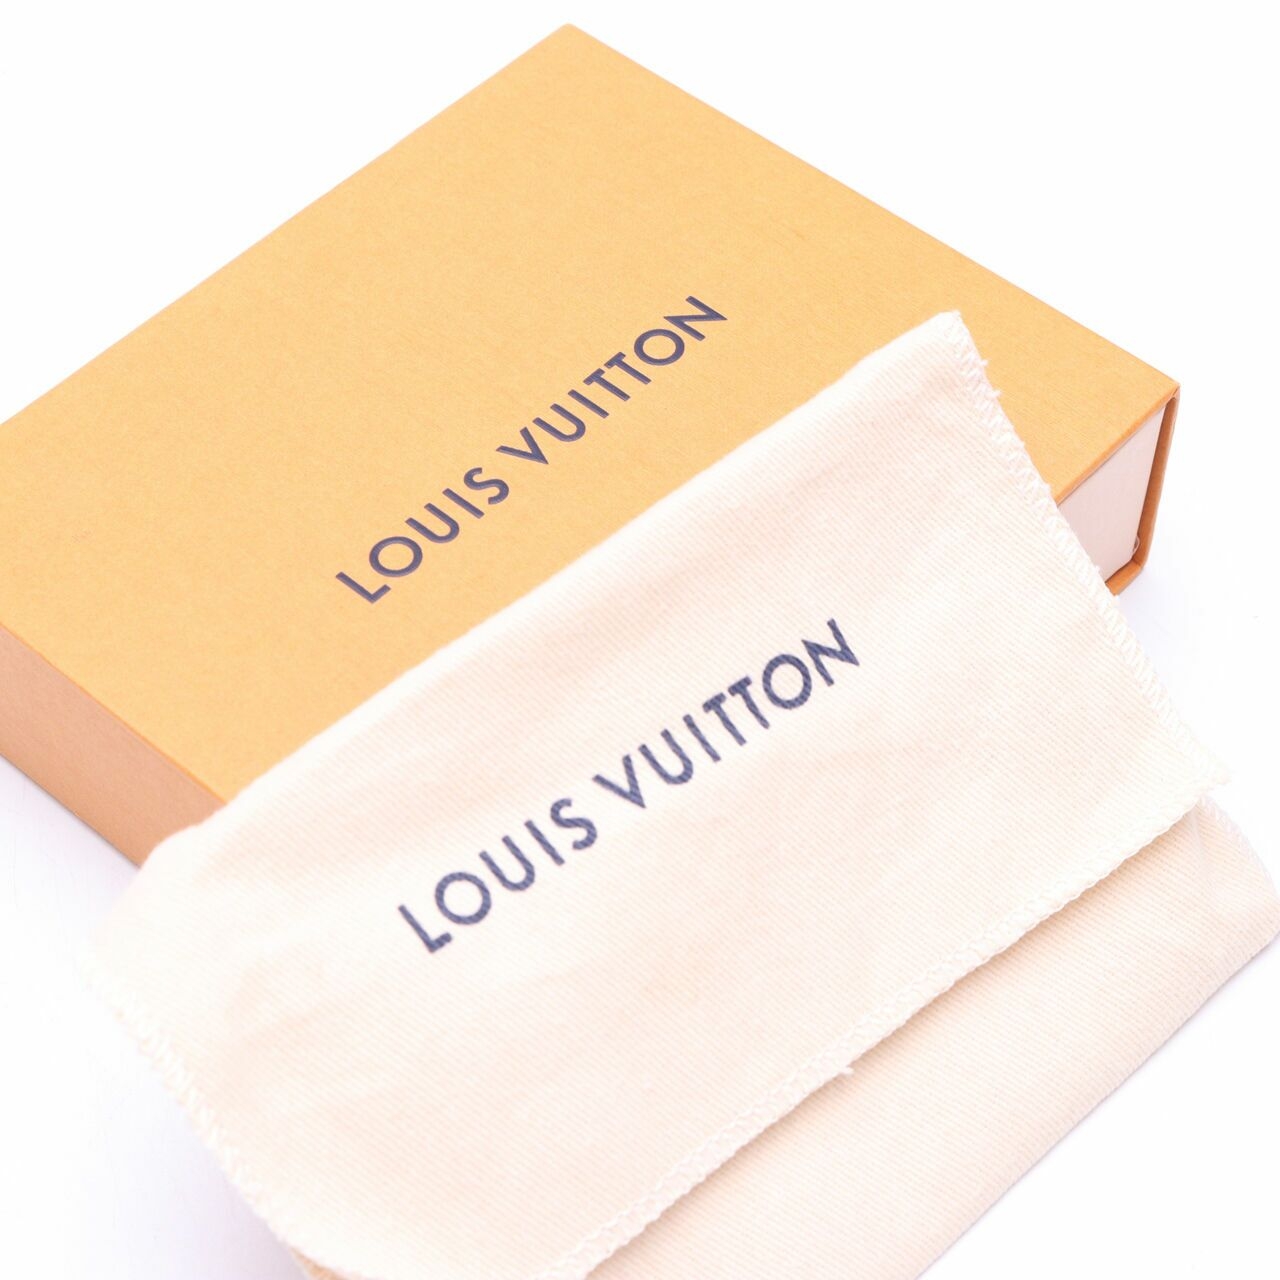 Louis Vuitton Victorine Monogram Brown/Burgundy Small Wallet